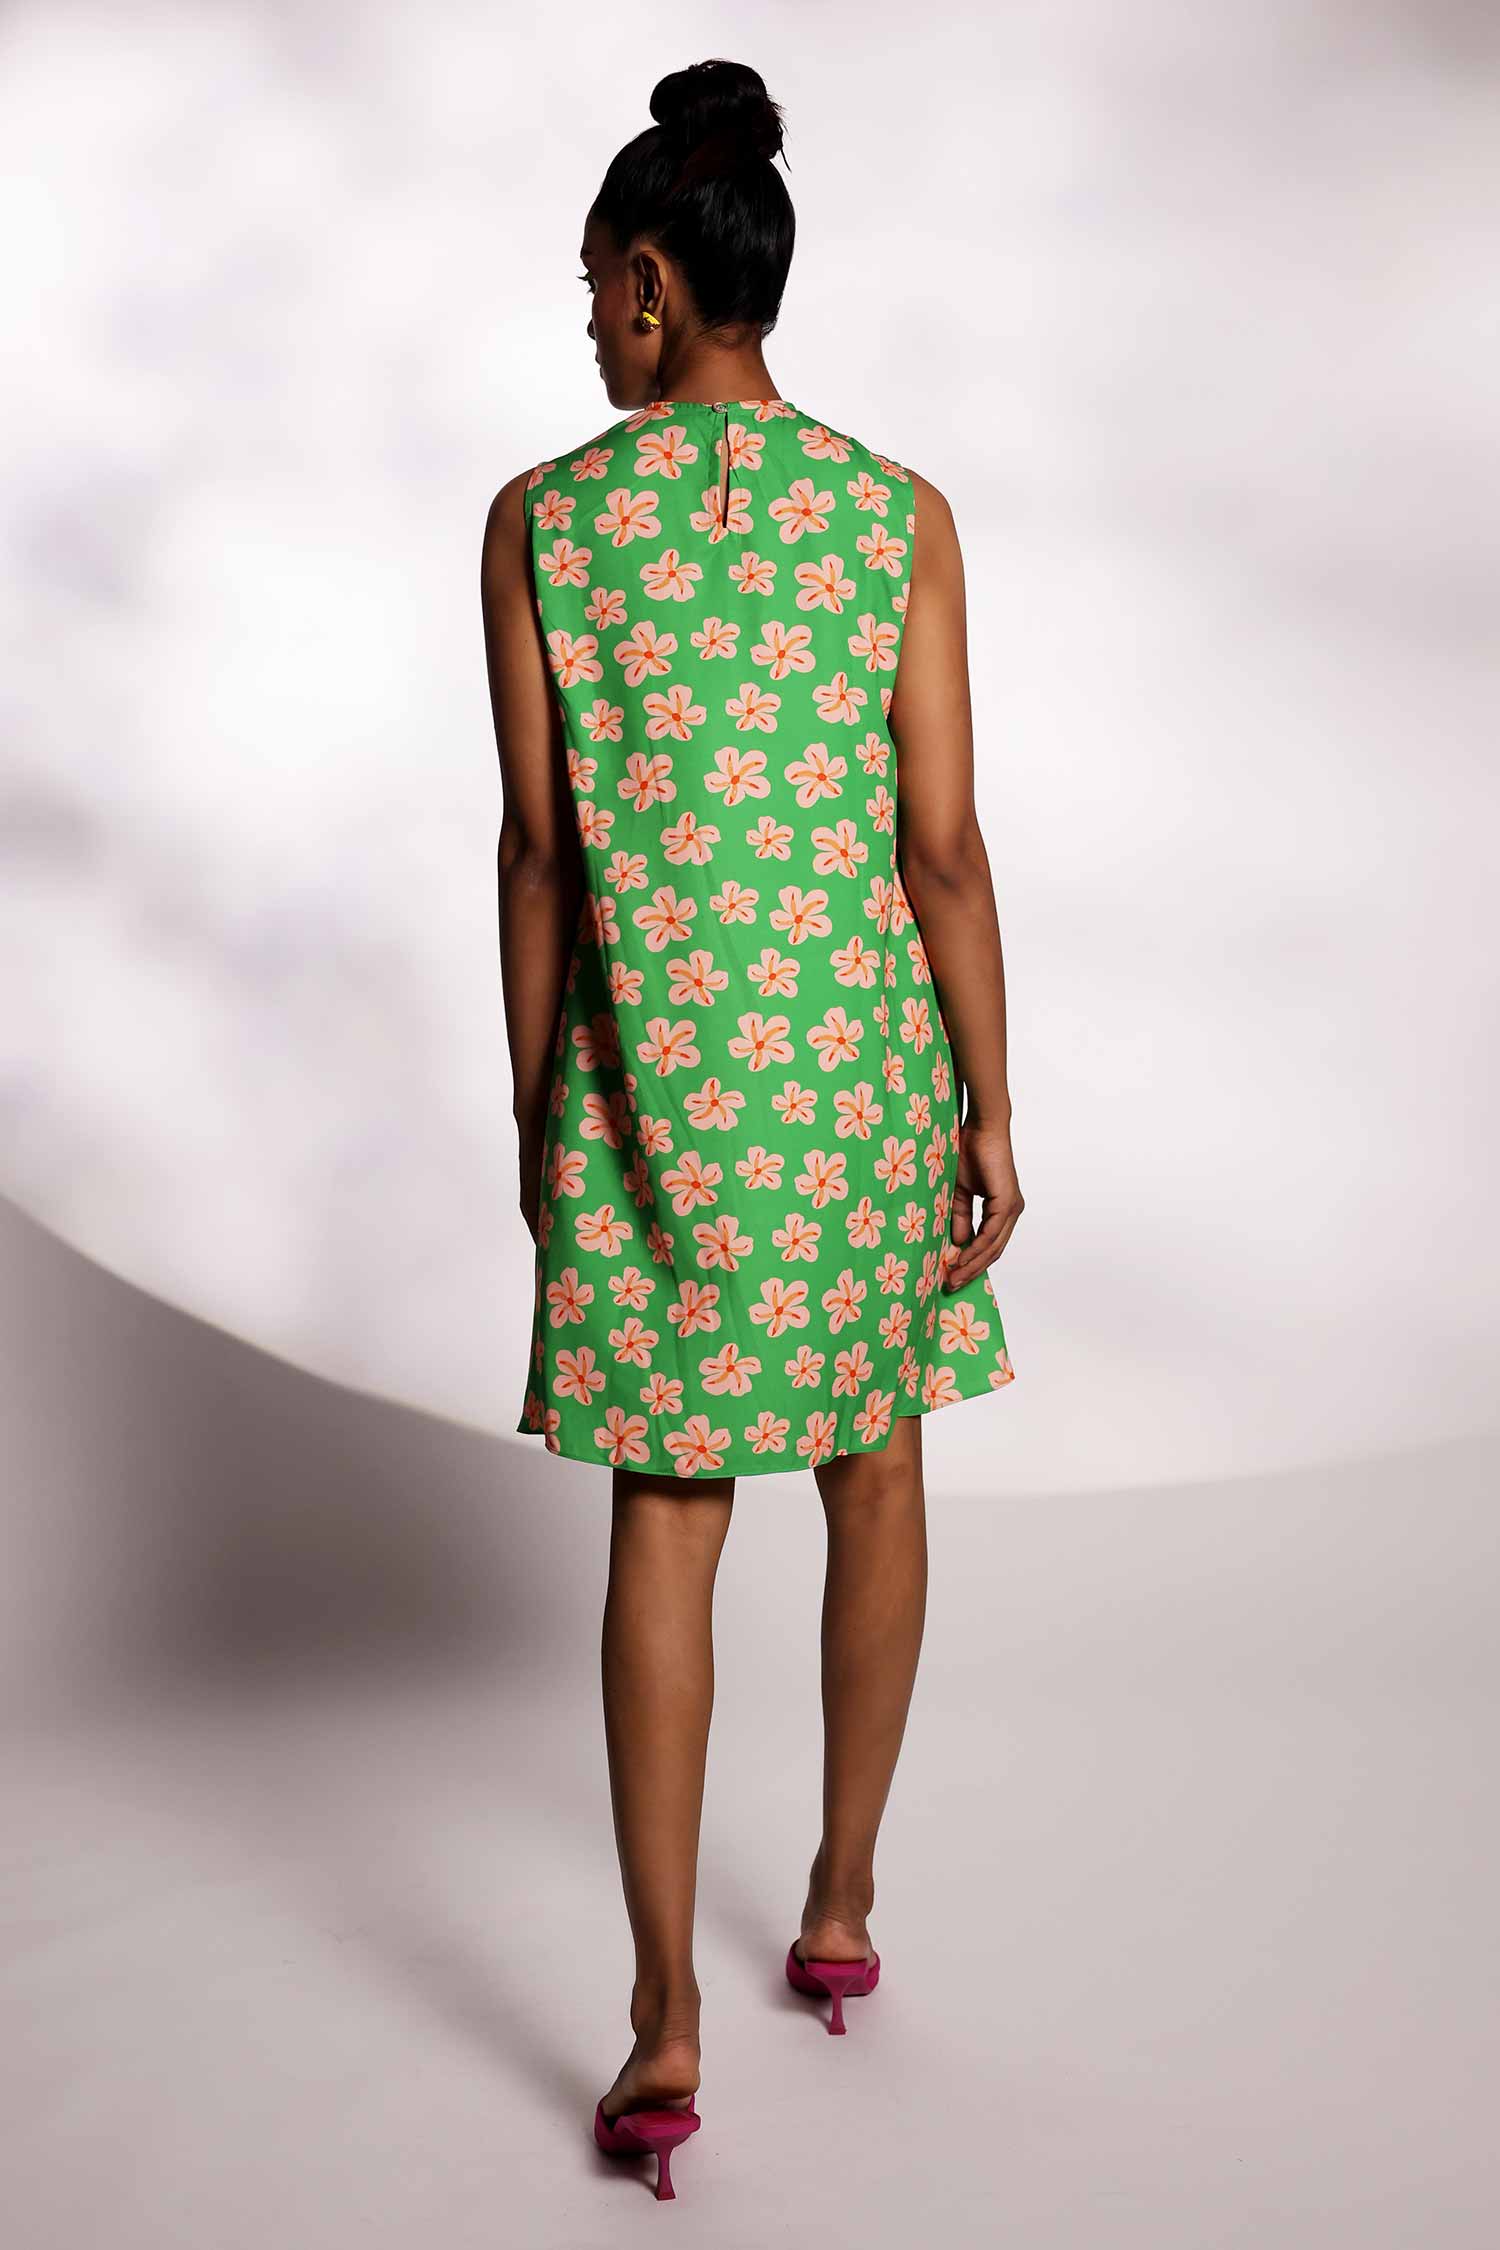 Green star print dress